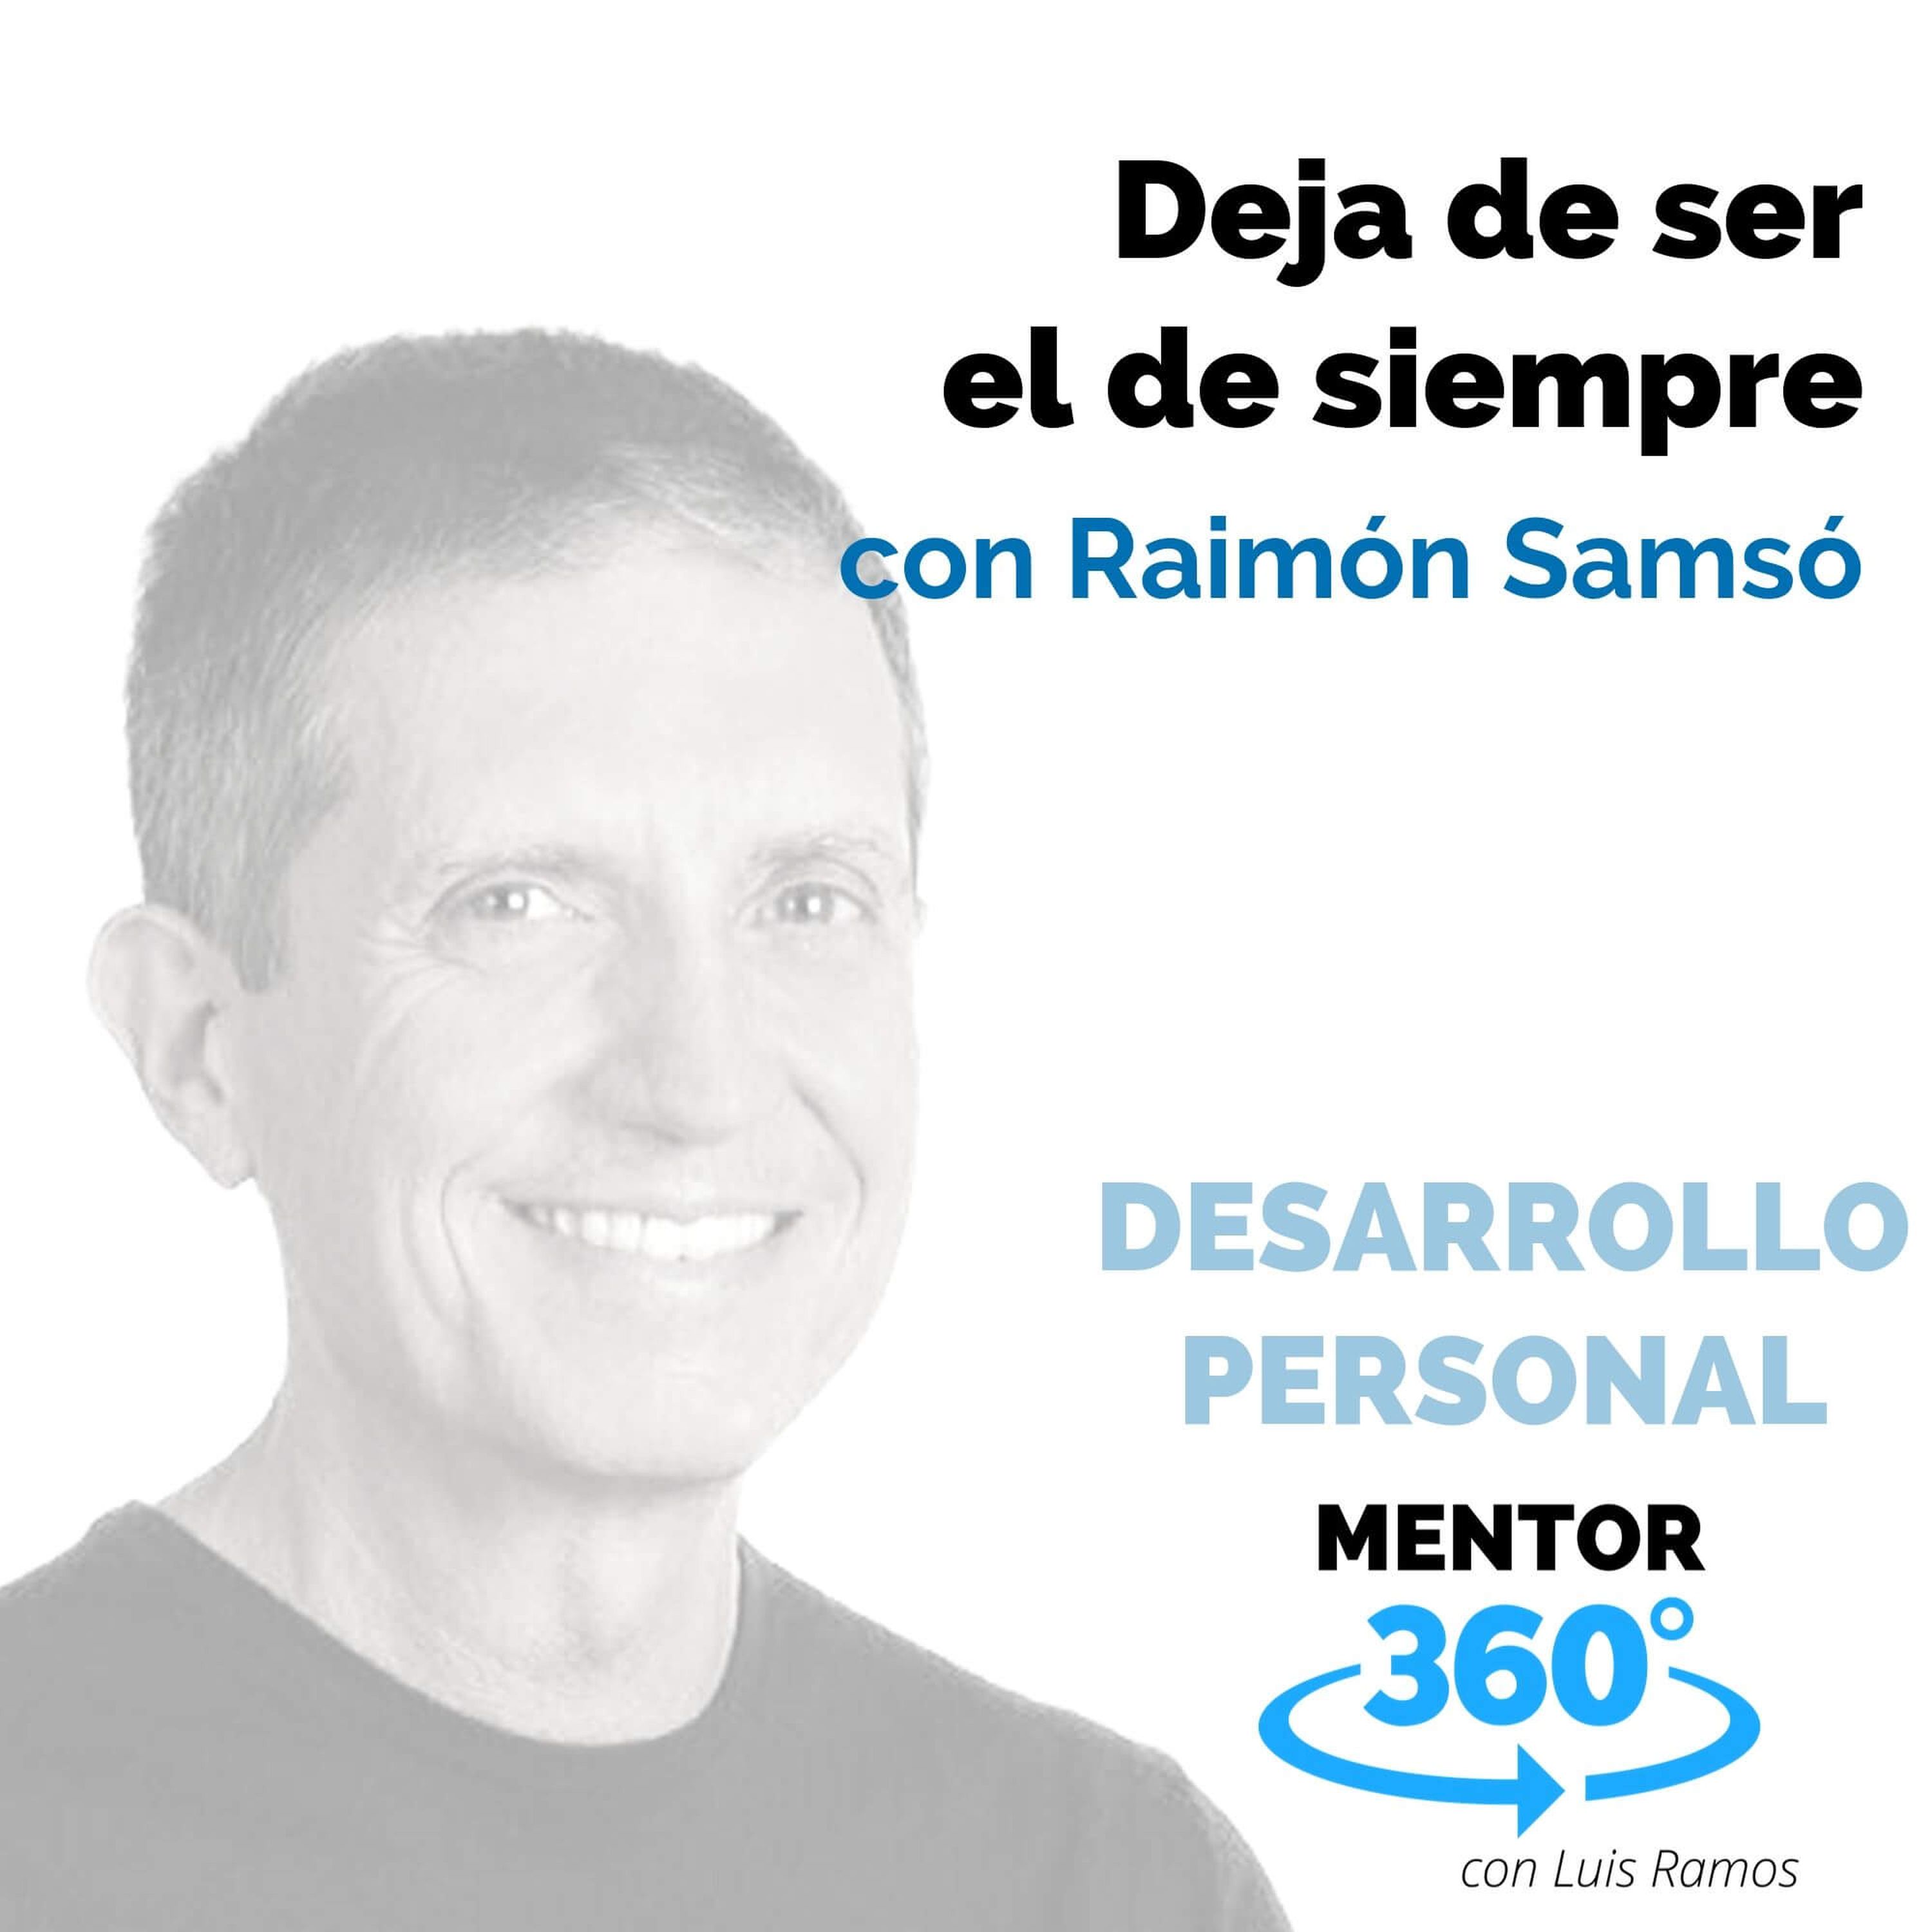 Deja de ser el de siempre, con Raimón Samsó - DESARROLLO PERSONAL